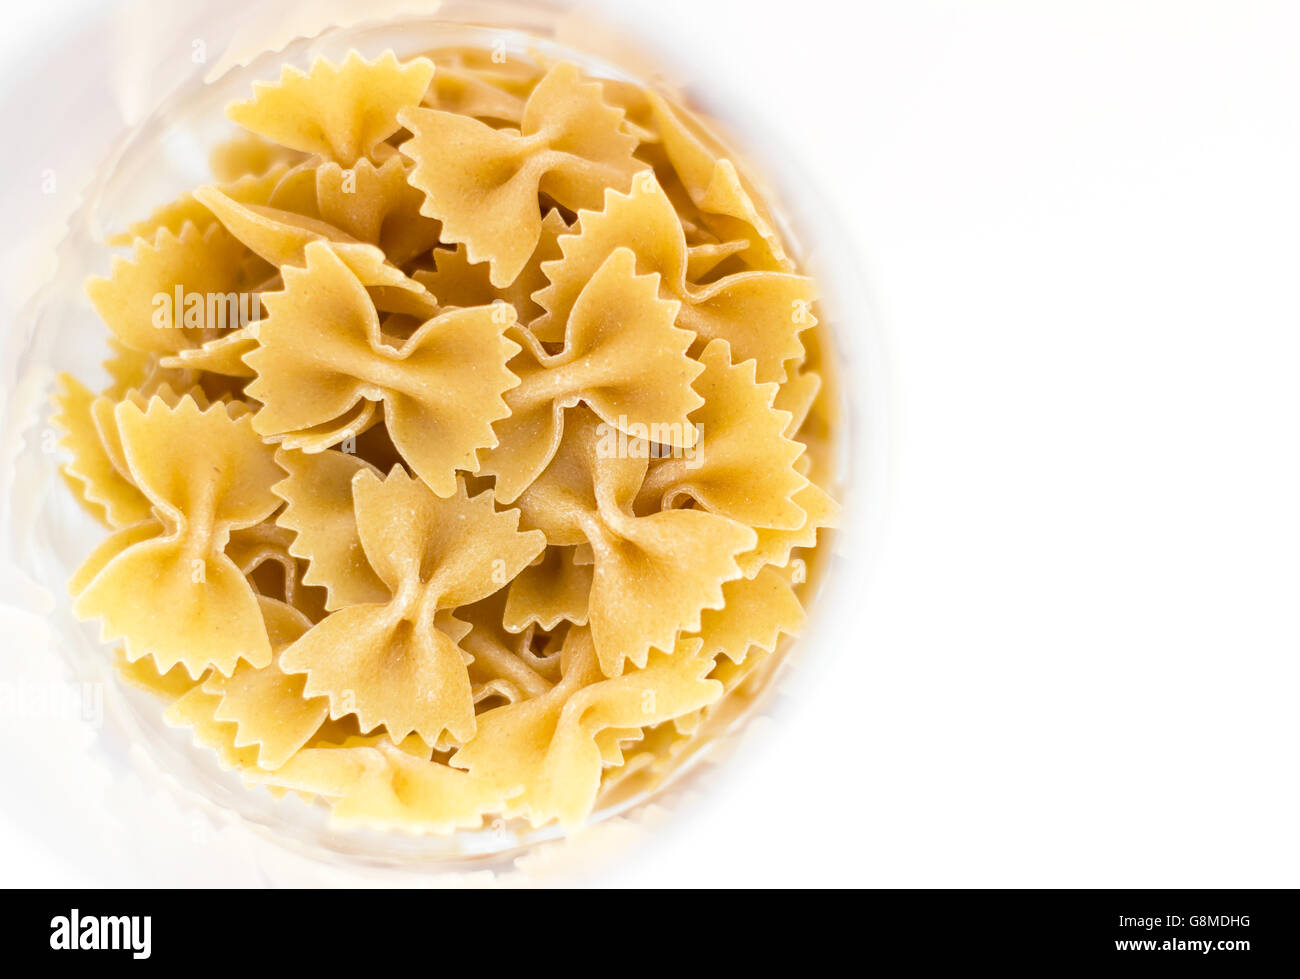 Dettaglio di un piatto di pasta integrale con bordi morbidi e copia di spazio. Foto Stock